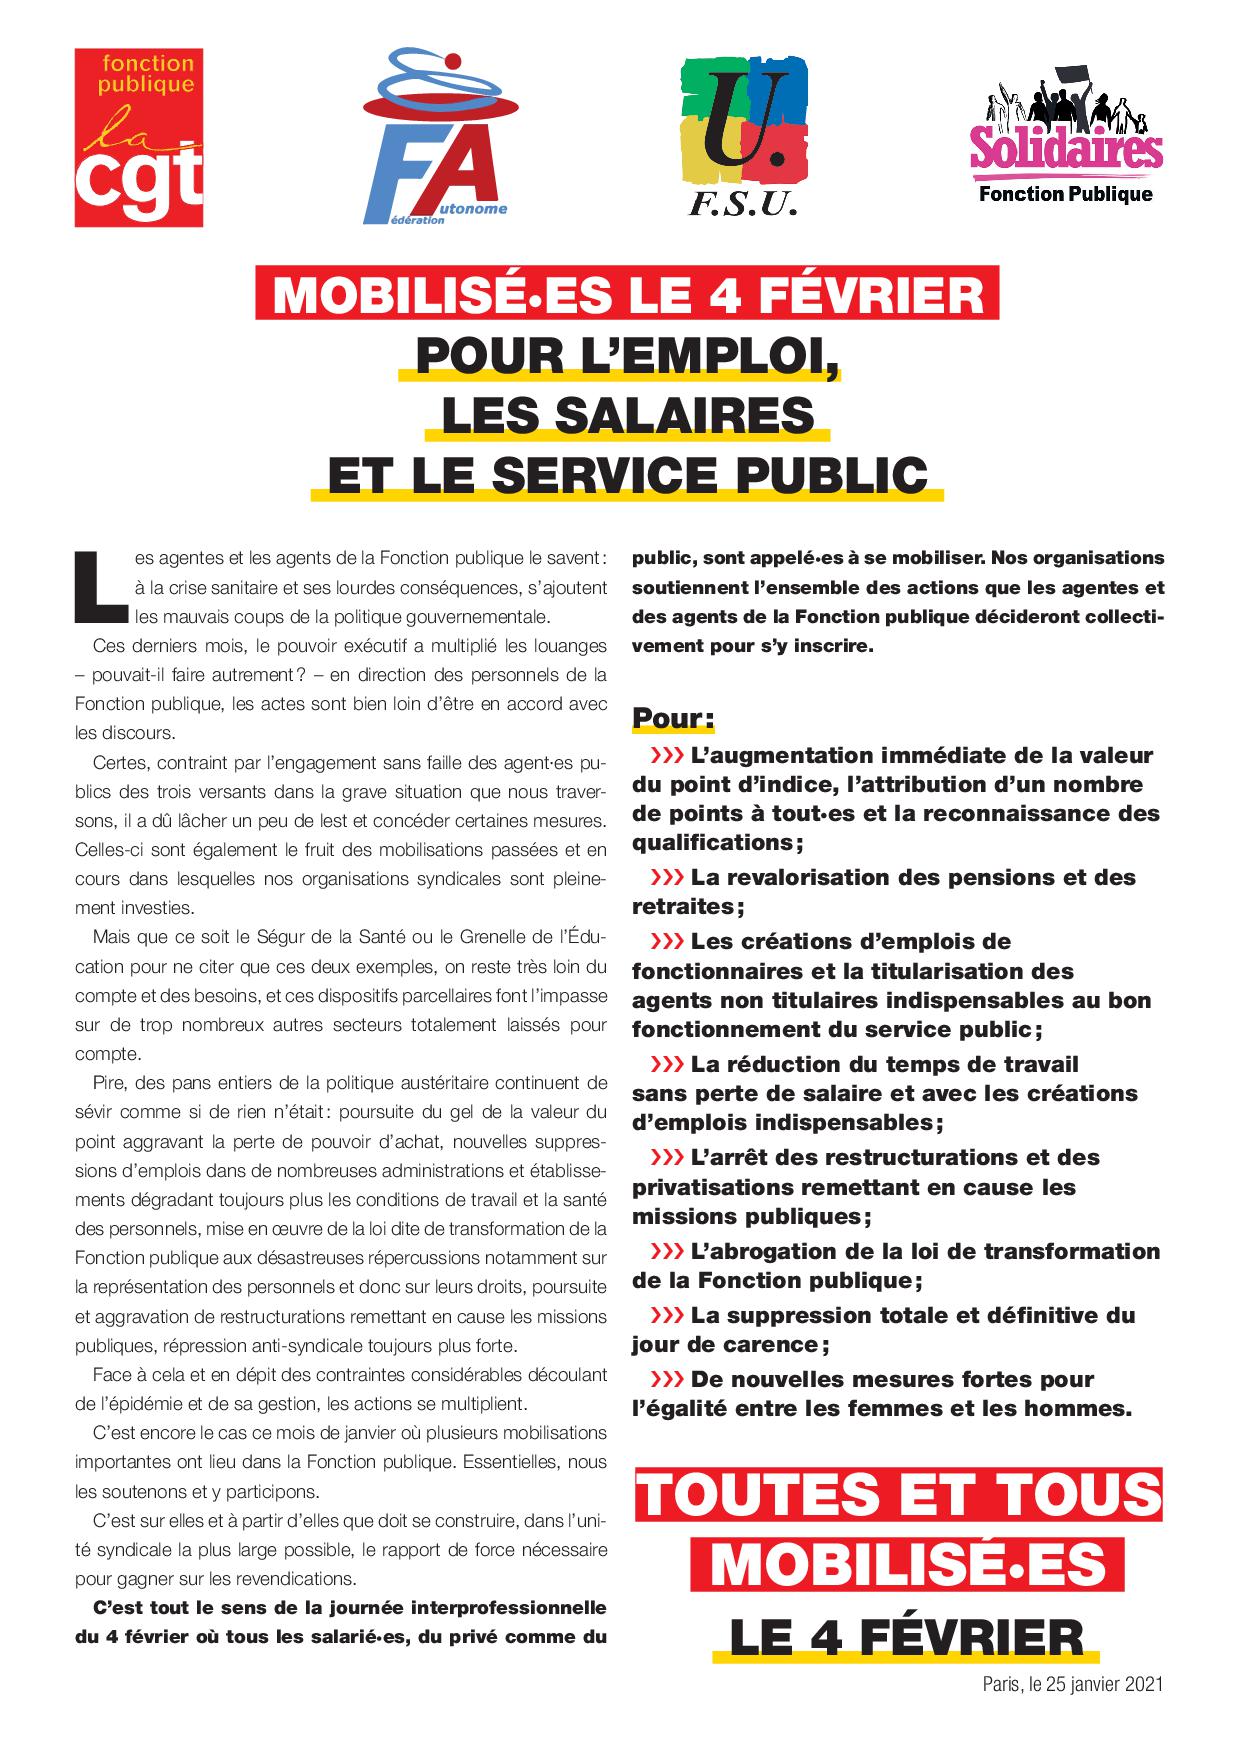 mobilisees_le_4fevrier_pour_l_emploi_les_salaires_et_le_service_public